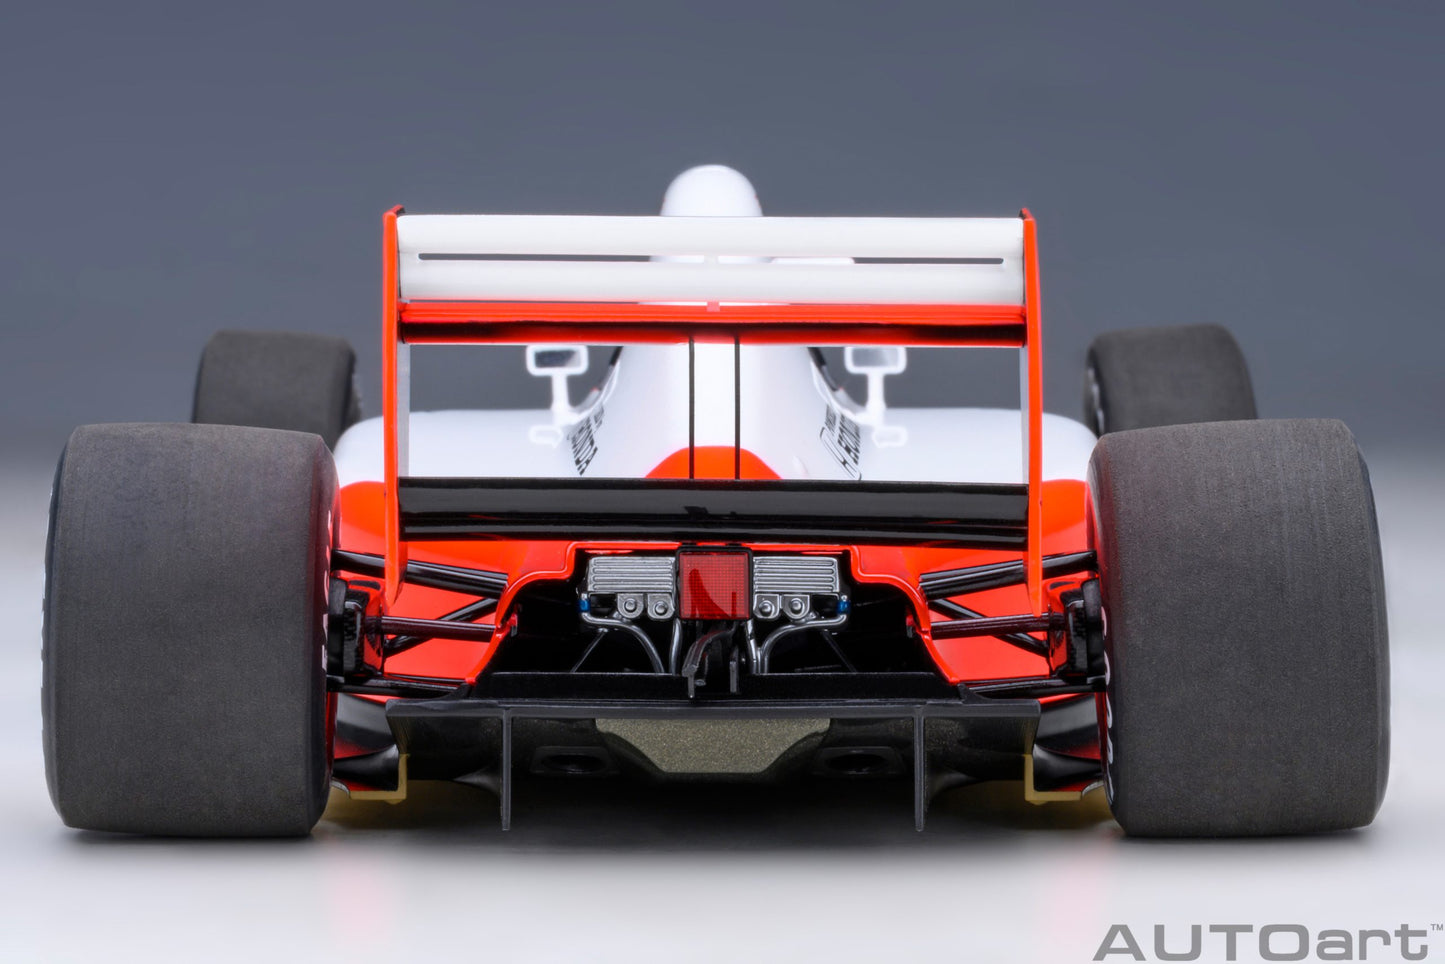 AUTOart 1:18 McLaren Honda MP4/6 F1 1991 #2 (without McLaren logo) 89152